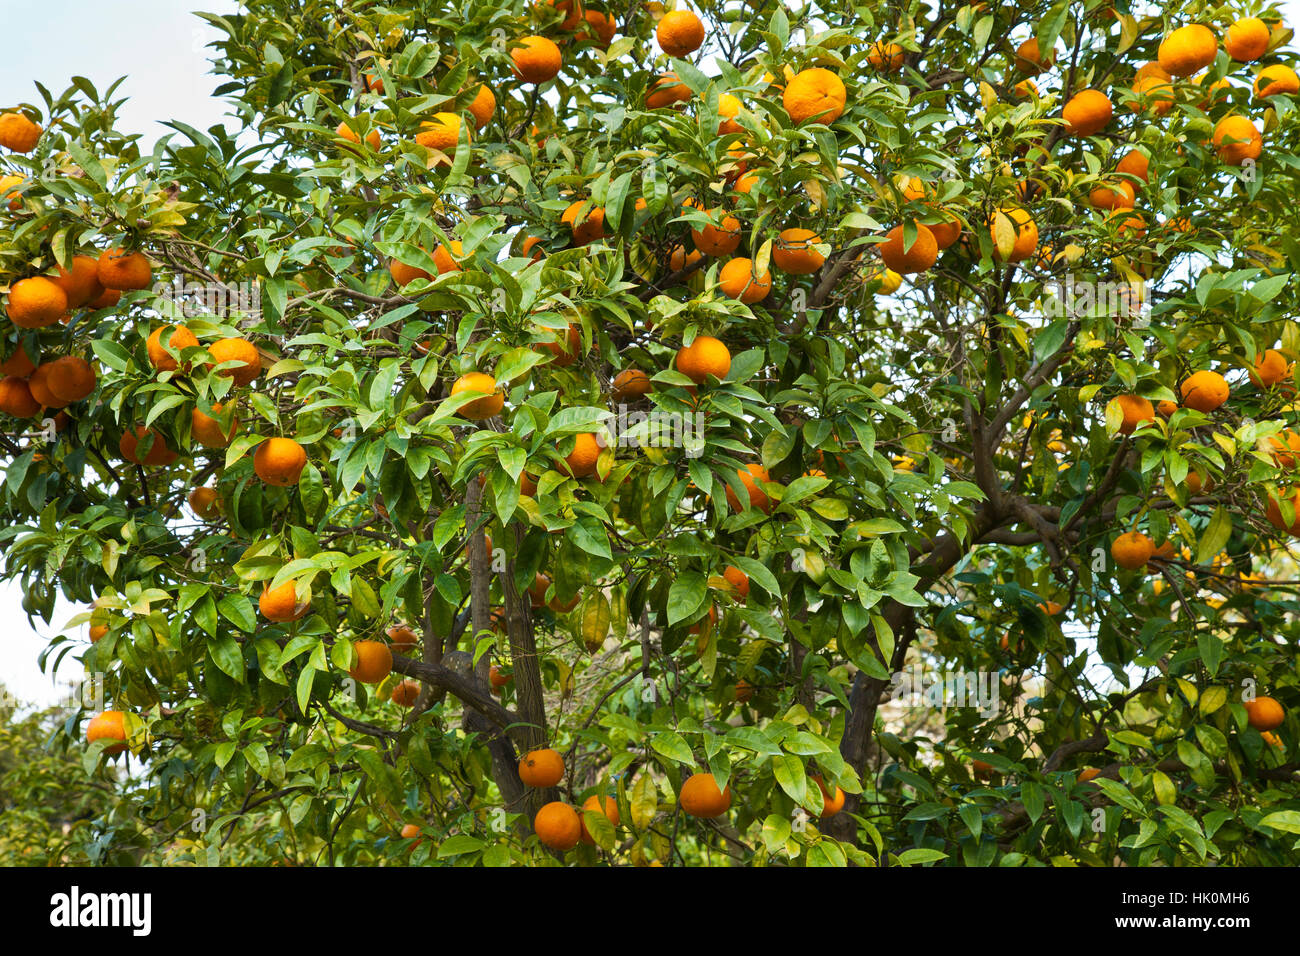 bitter orange, also known as Seville orange, sour orange, bigarade orange, and marmalade orange, (Citrus aurantium) Stock Photo